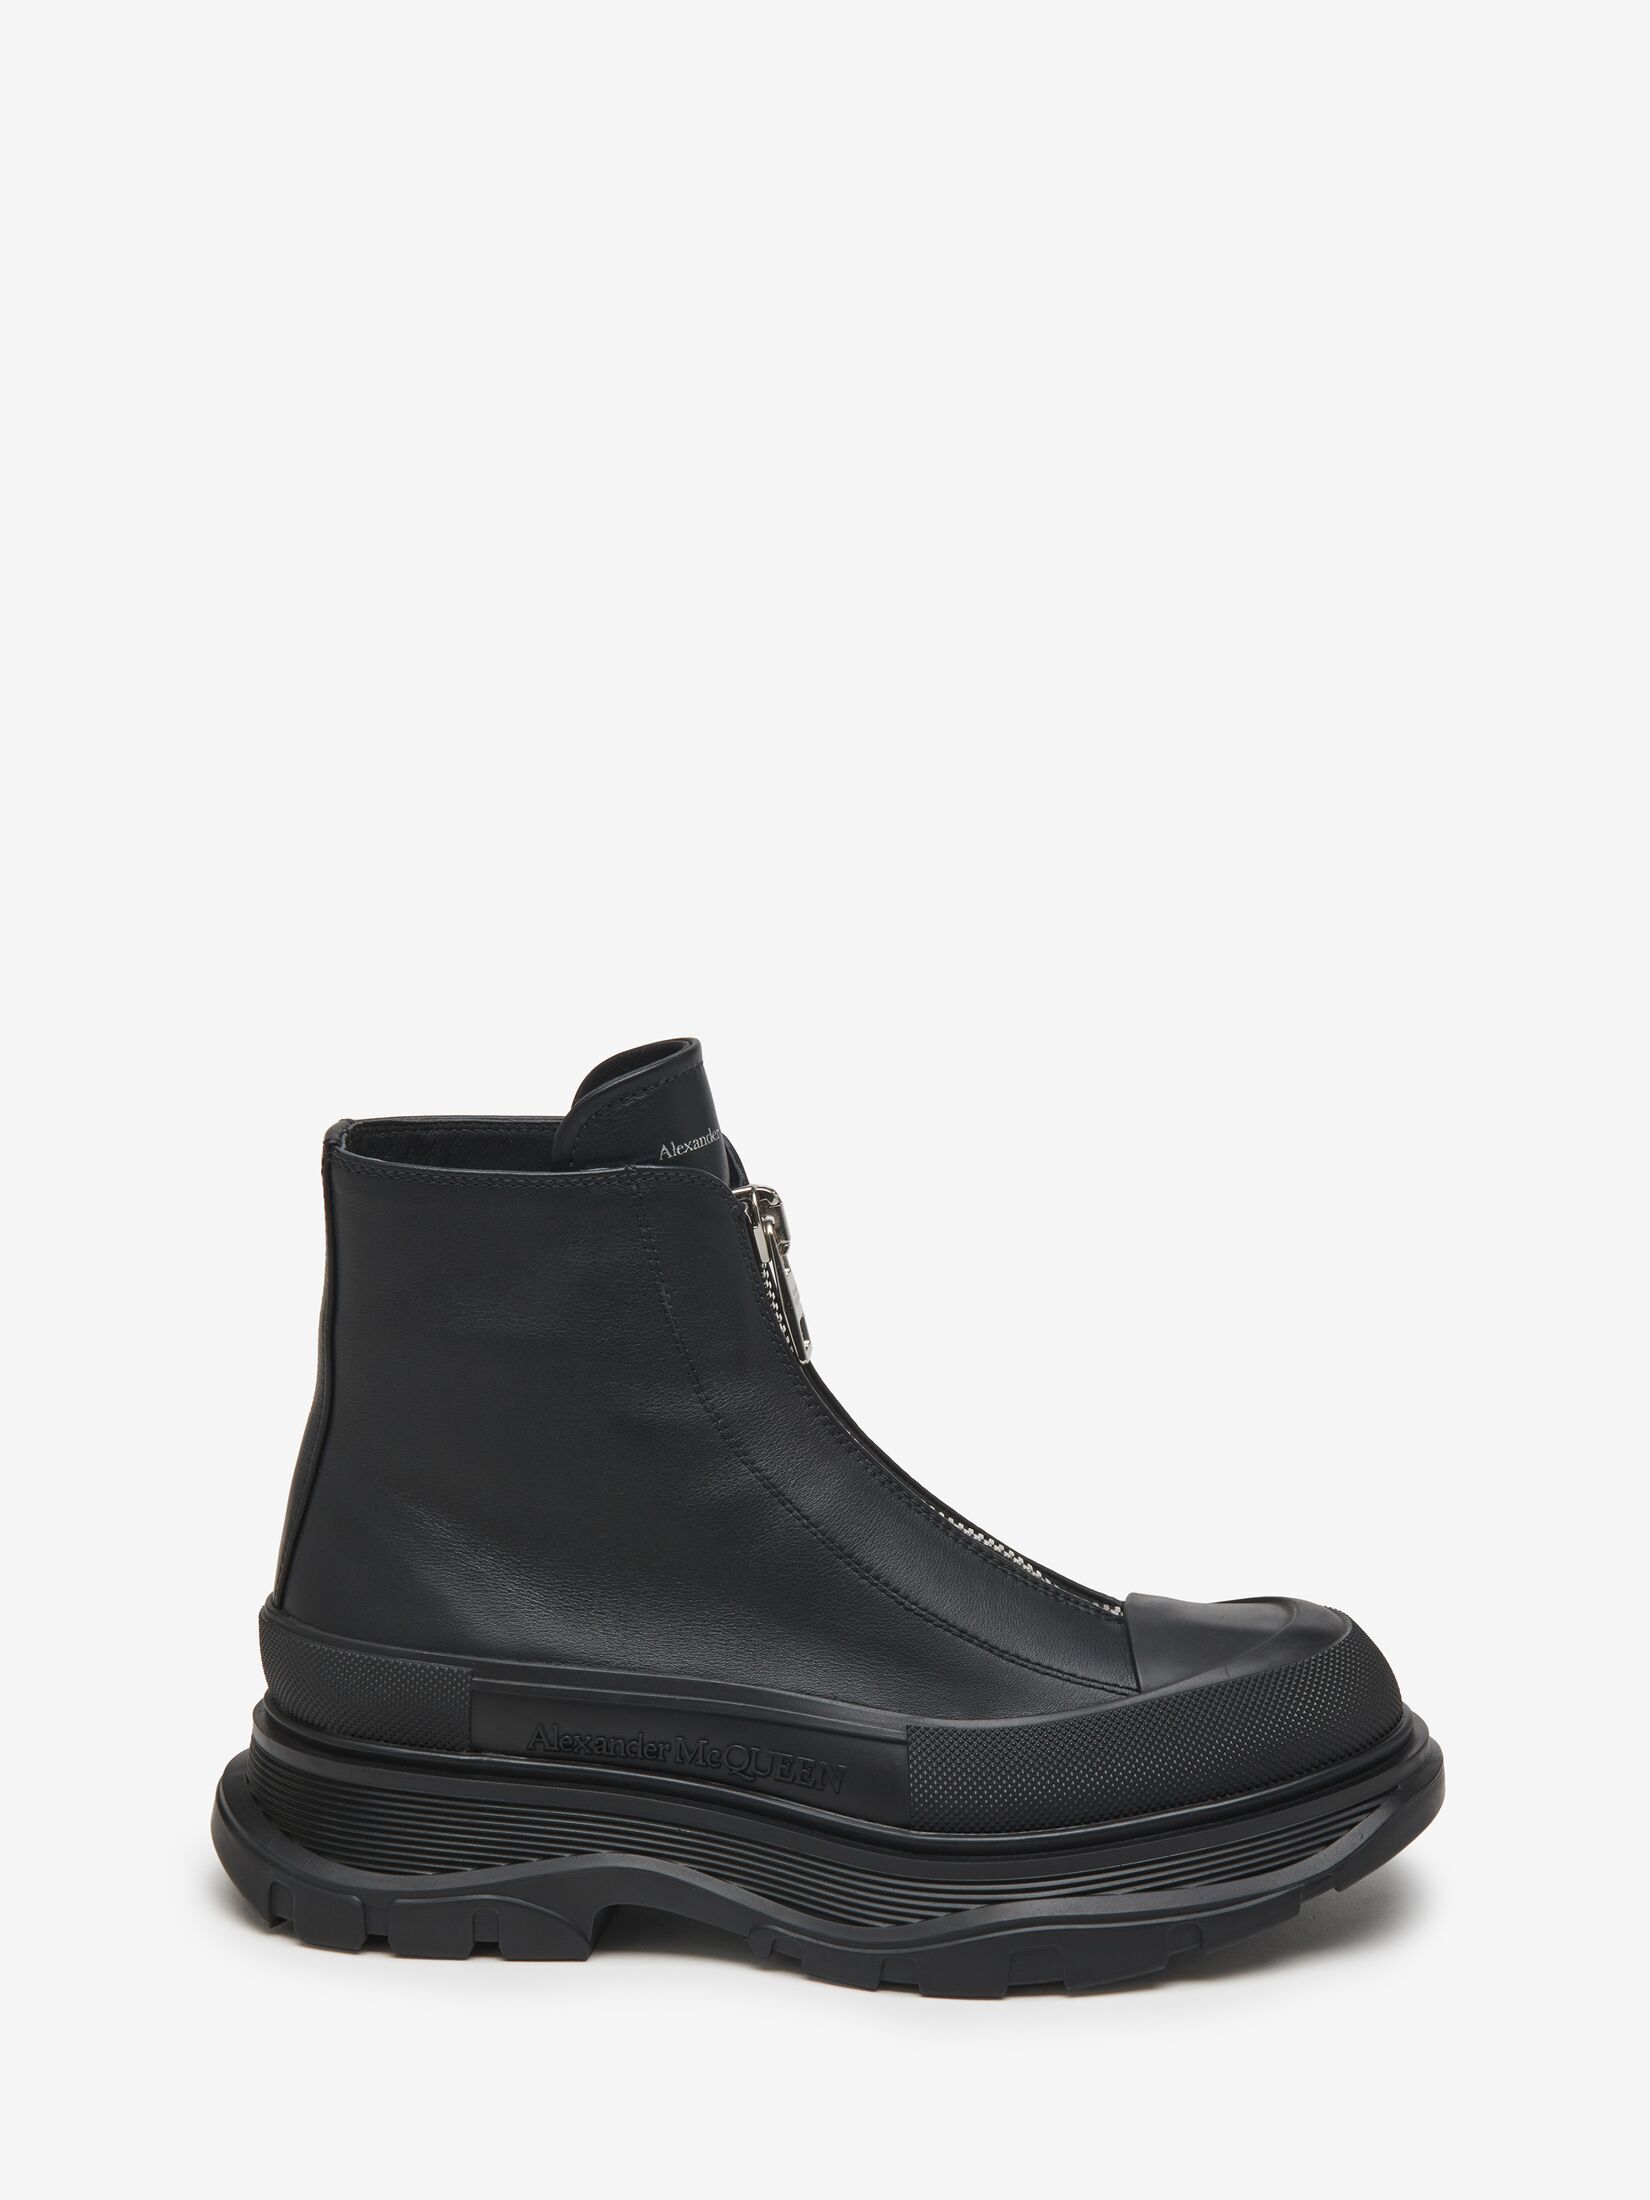 Women's Designer Boots | Ankle & Chelsea | Alexander McQueen US